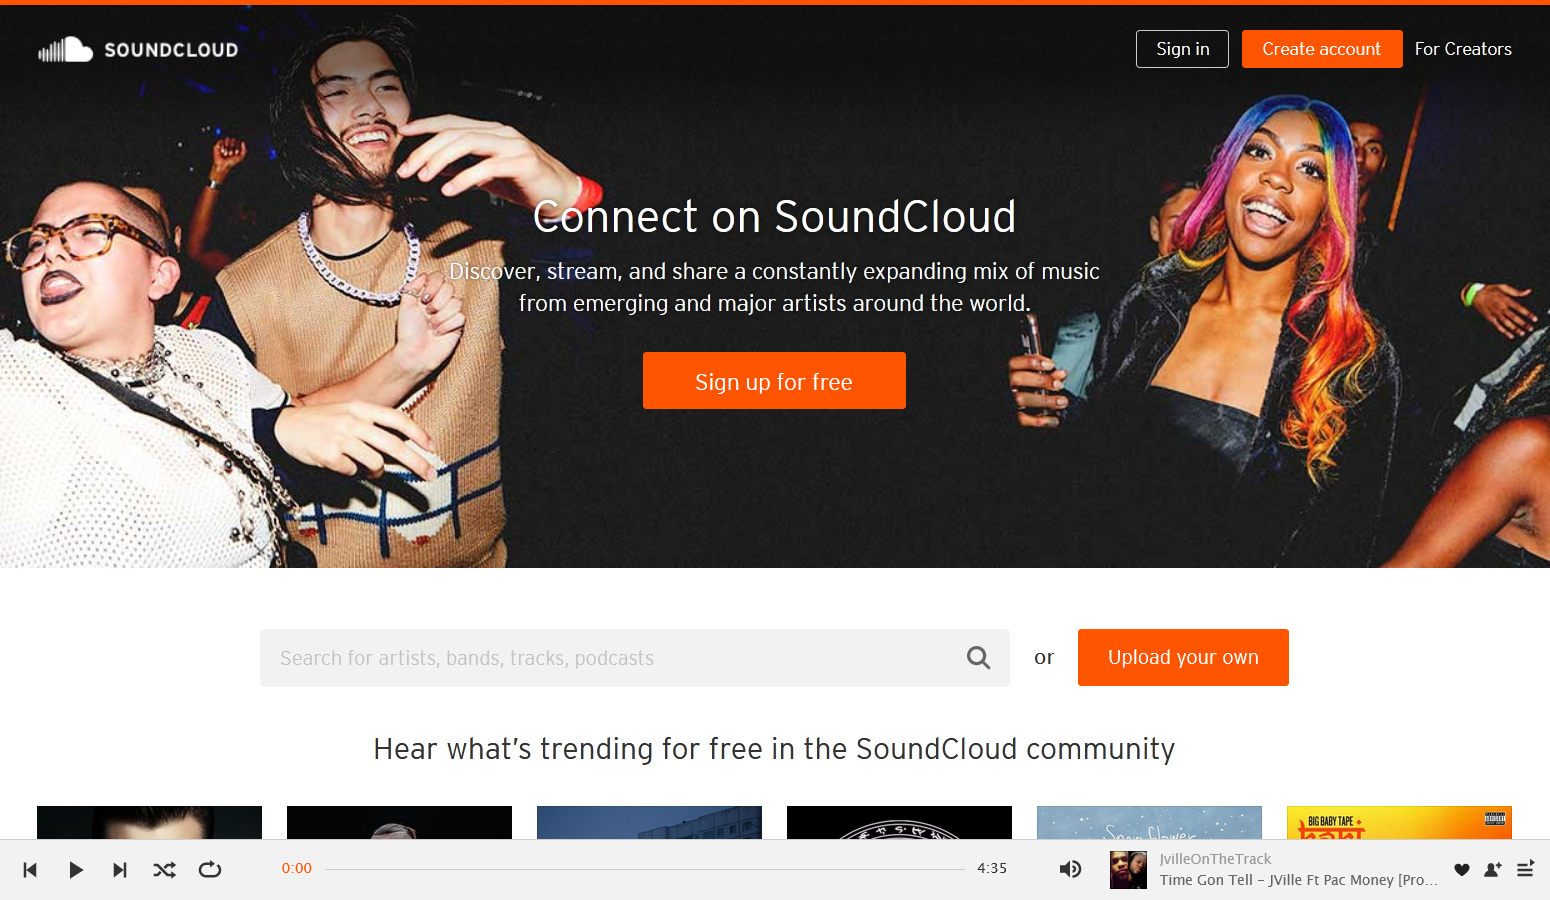 soundcloud.com